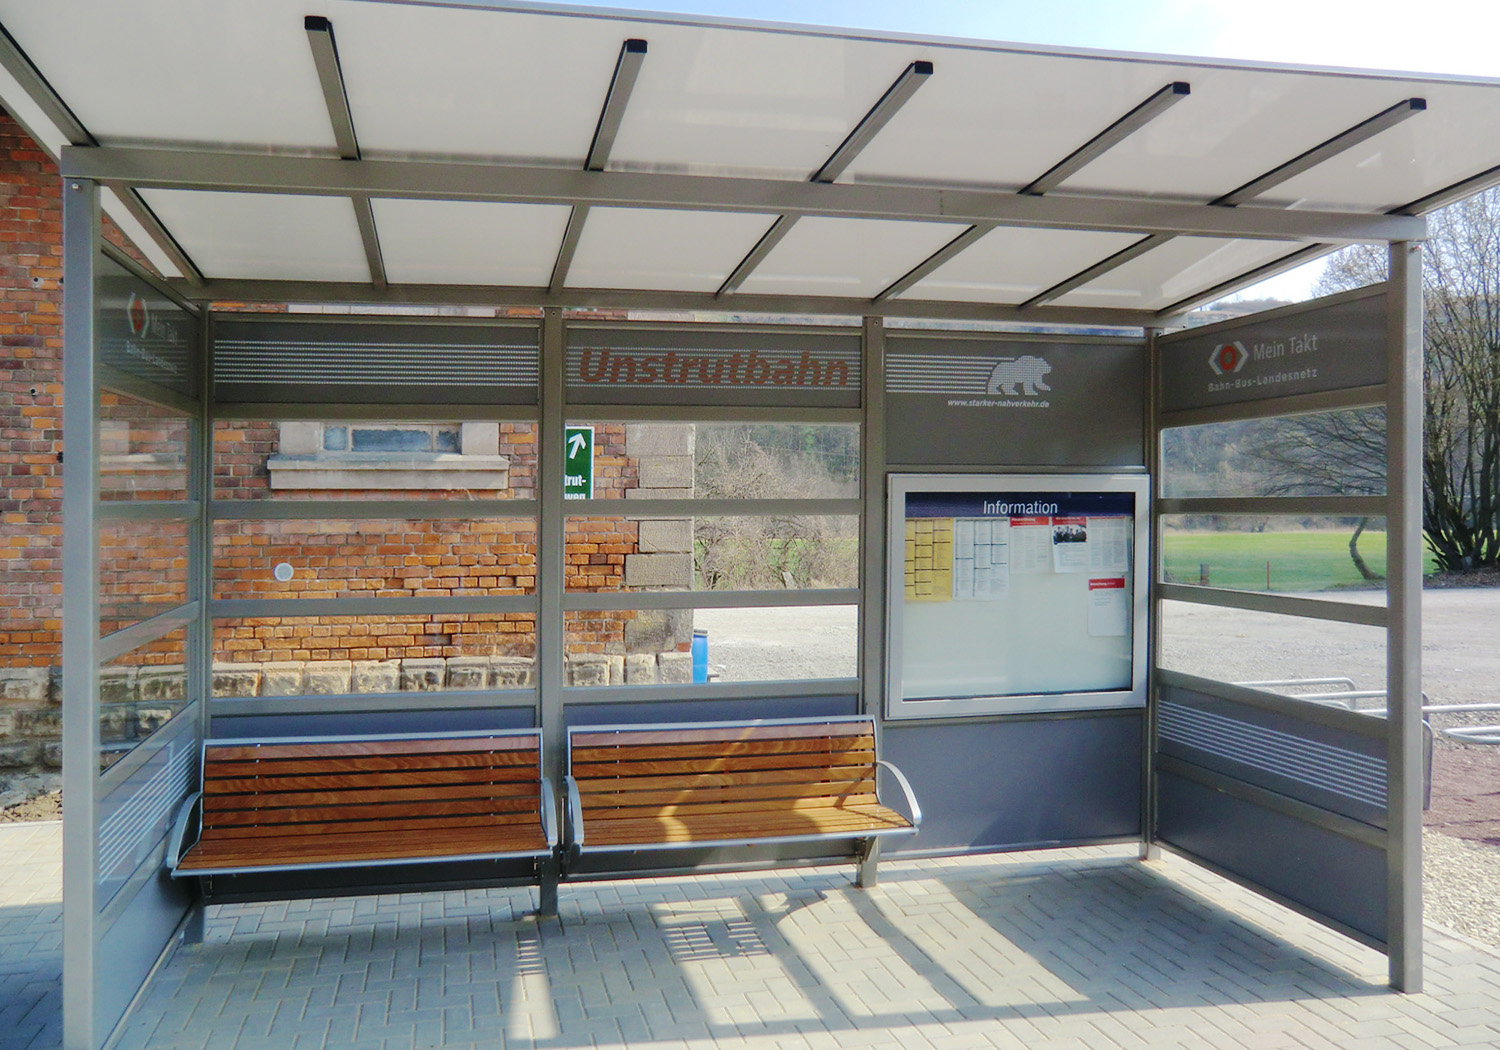 Entlang der Unstrutbahn zwischen Naumburg und Nebra wurden 2012 alle Bahnsteige erneuert, das Mobiliar erhielt eine attraktive Gestaltung